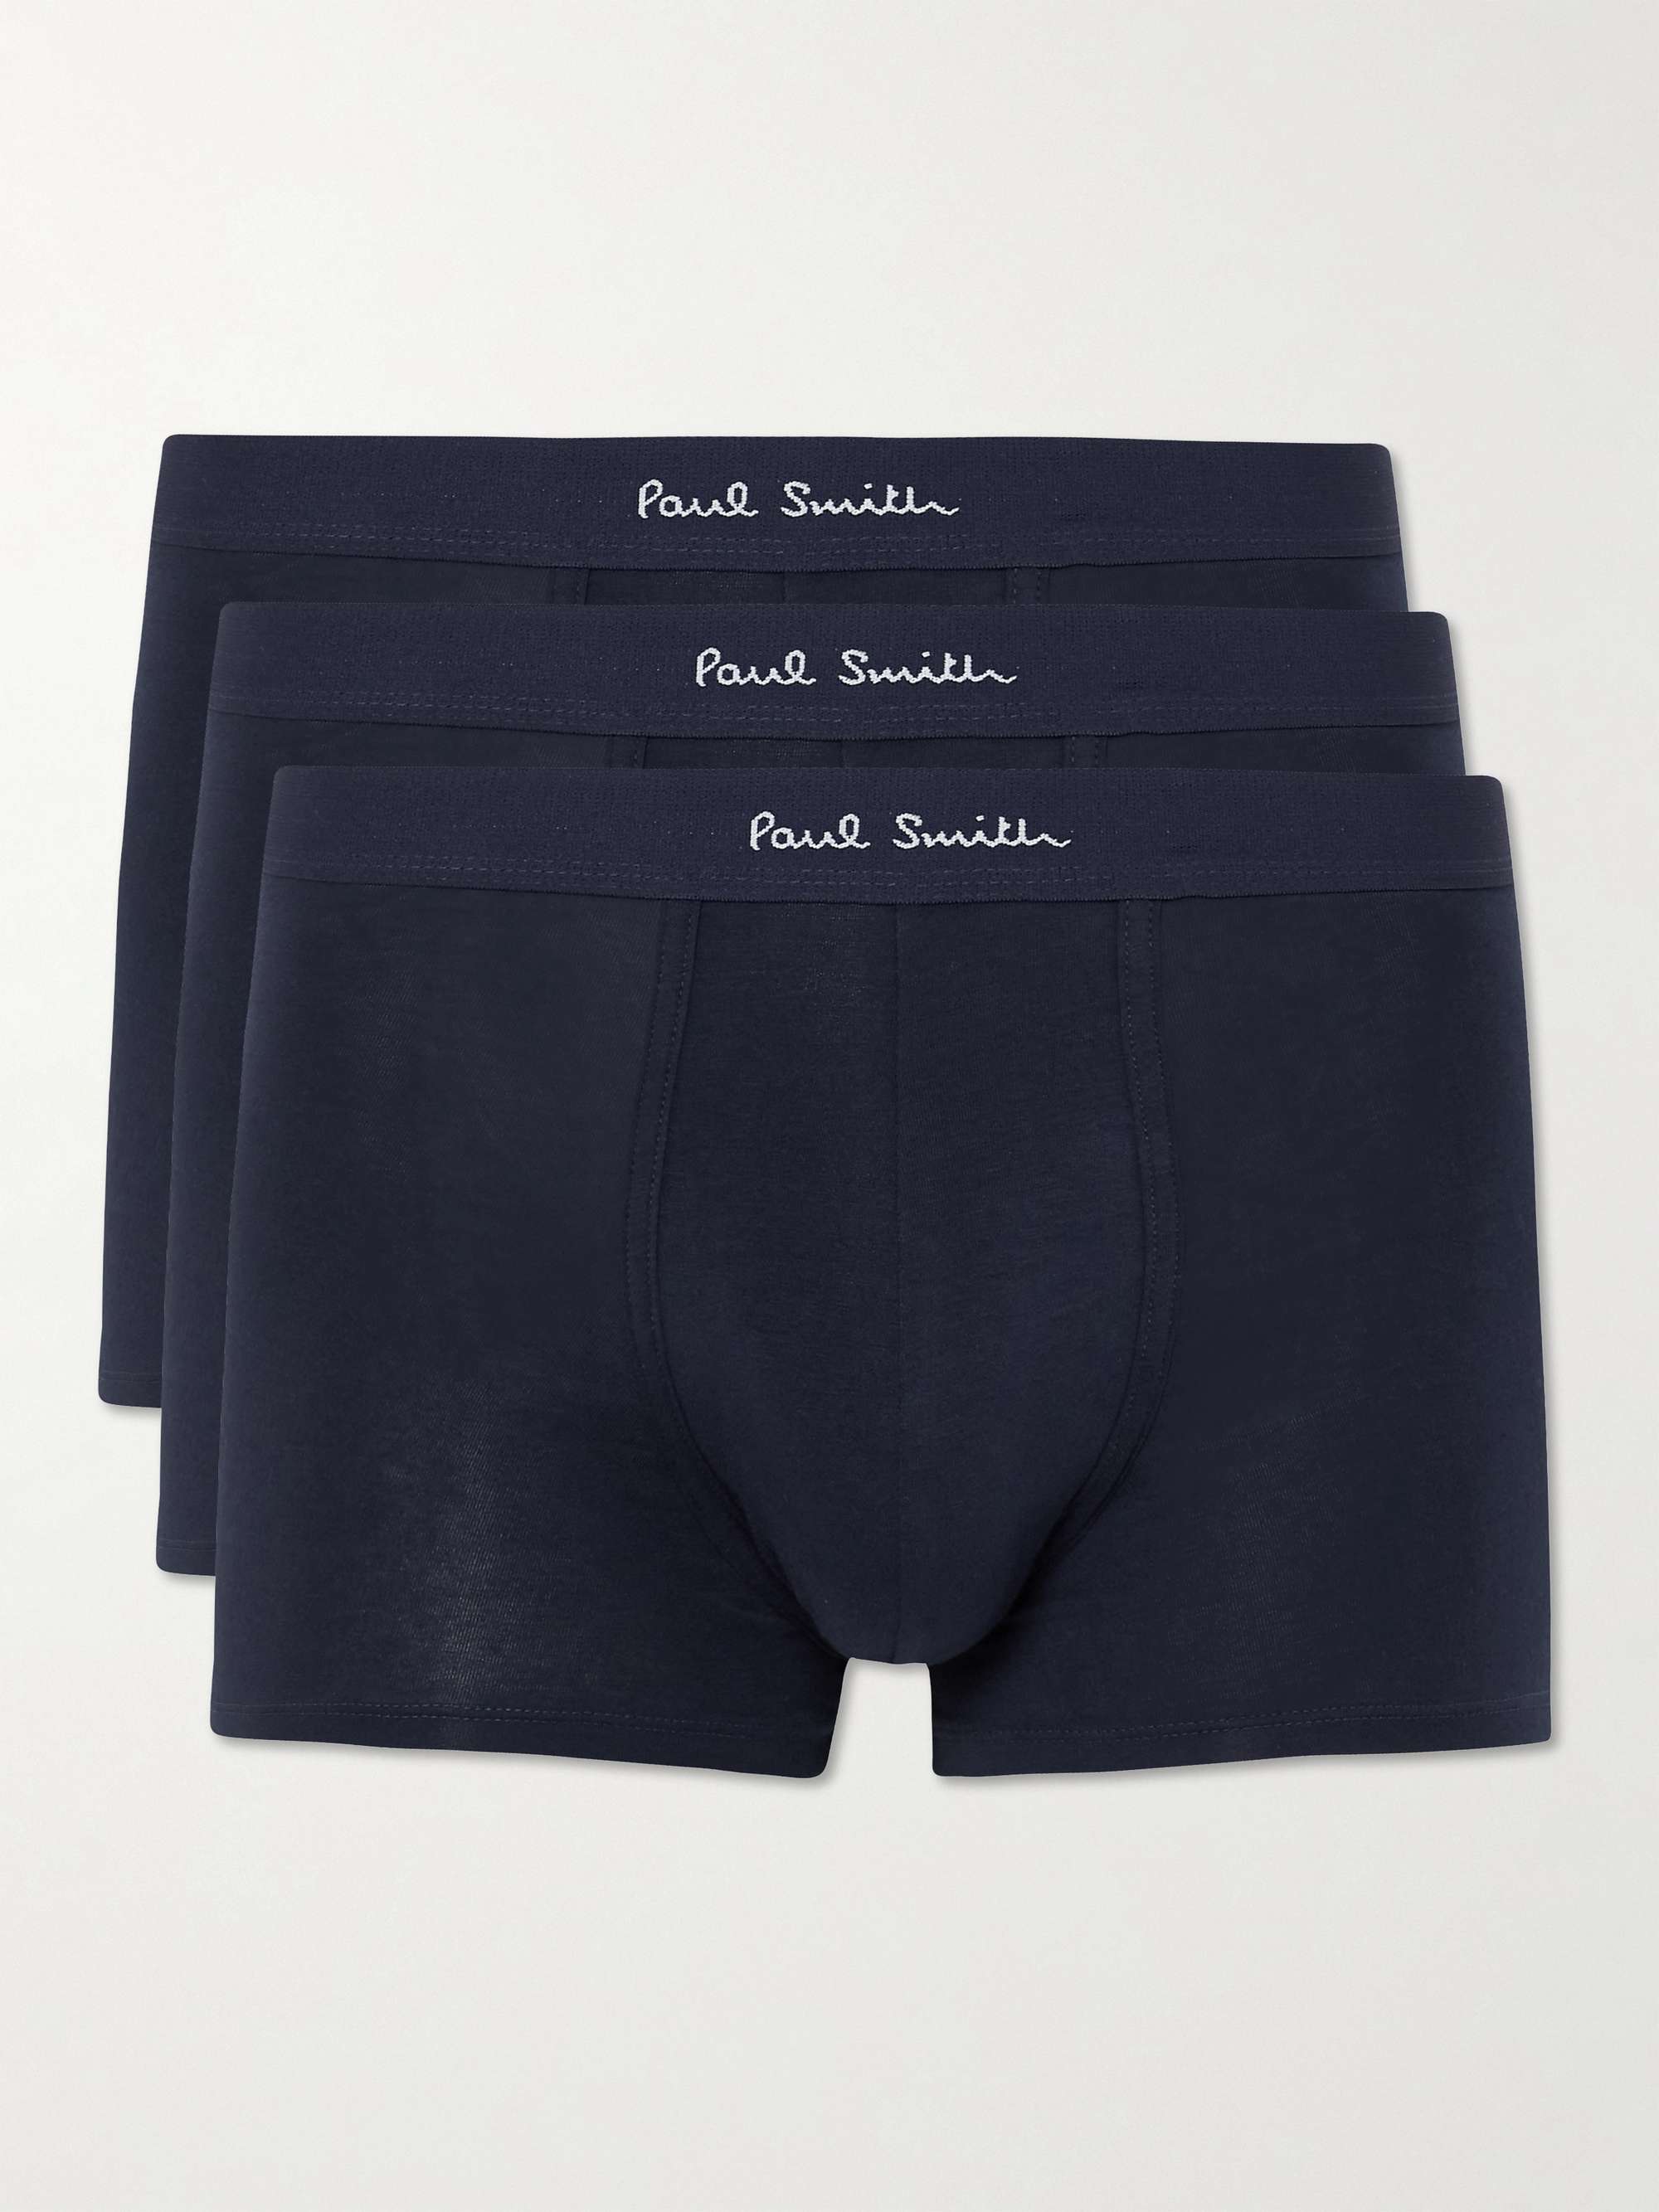 폴 스미스 박서 팬티 남성 속옷 3팩 (선물 추천) Paul Smith Three-Pack Stretch-Cotton Boxer Briefs,Navy